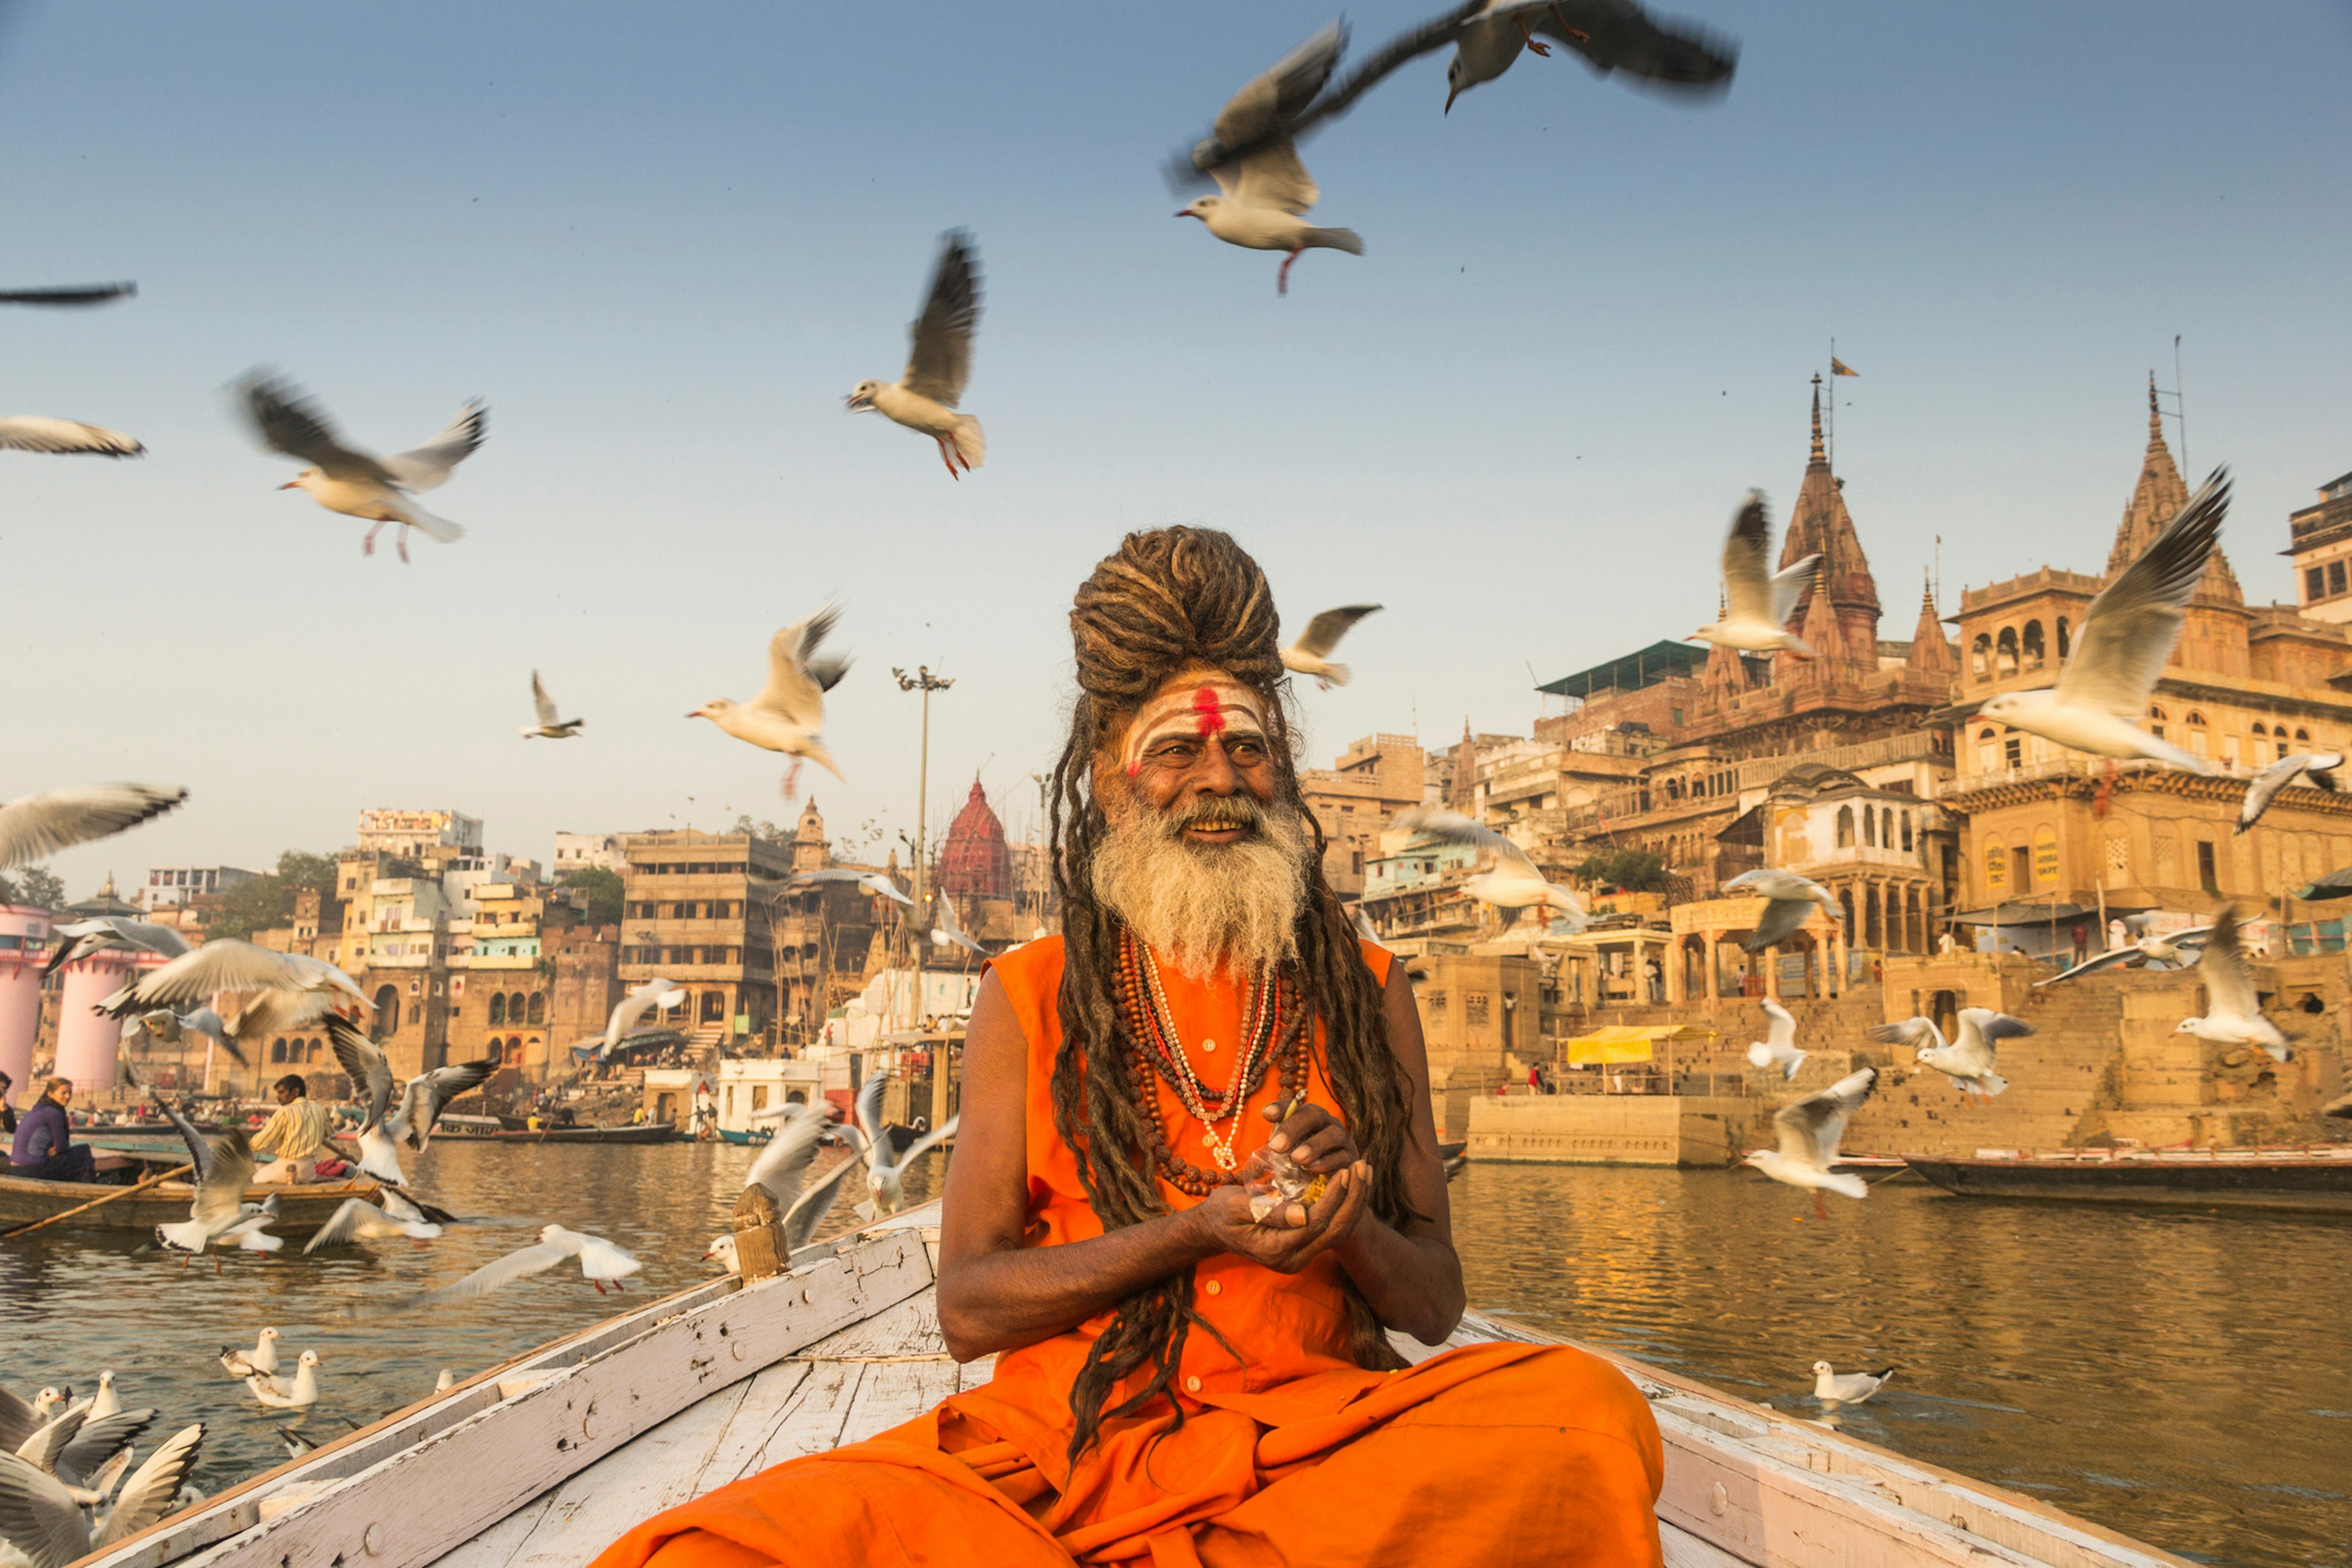 Photo Taken In Varanasi, India
1124409148
belief